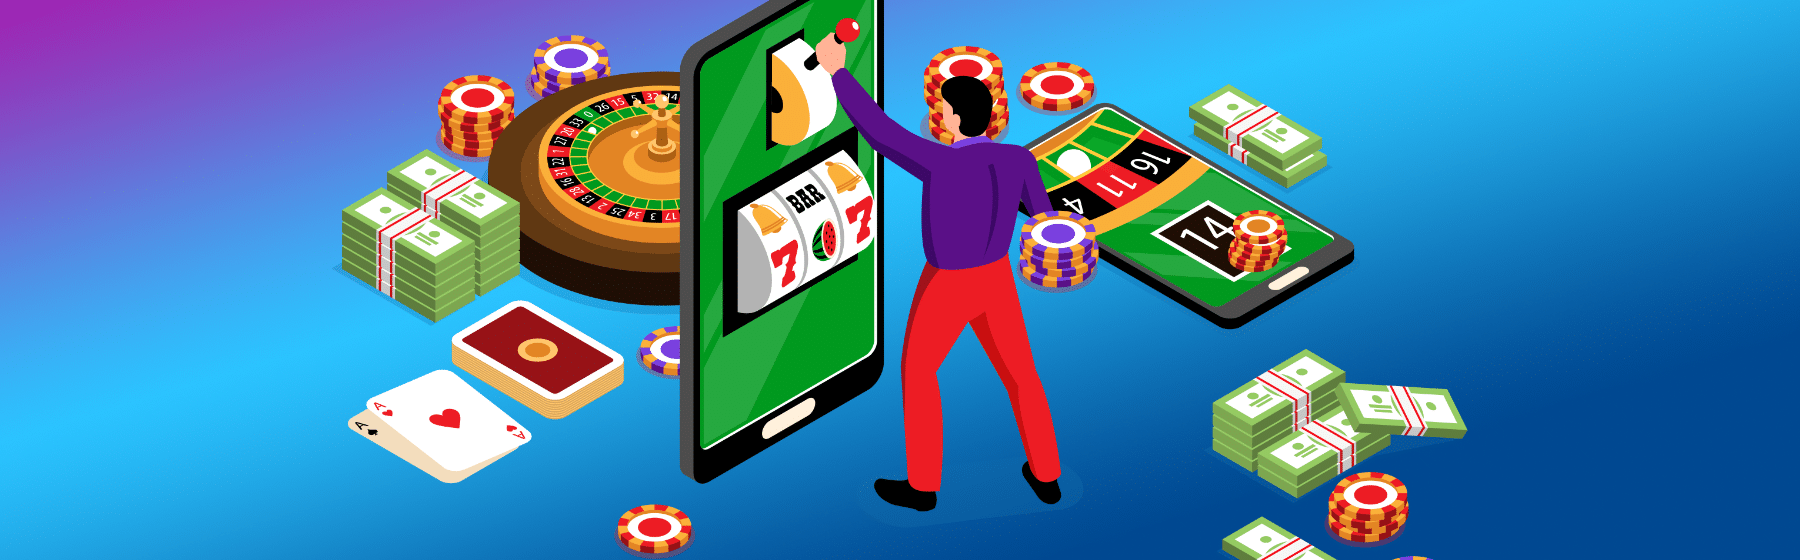 Man op grote telefoon simuleert het spelen van mobiele gokkast